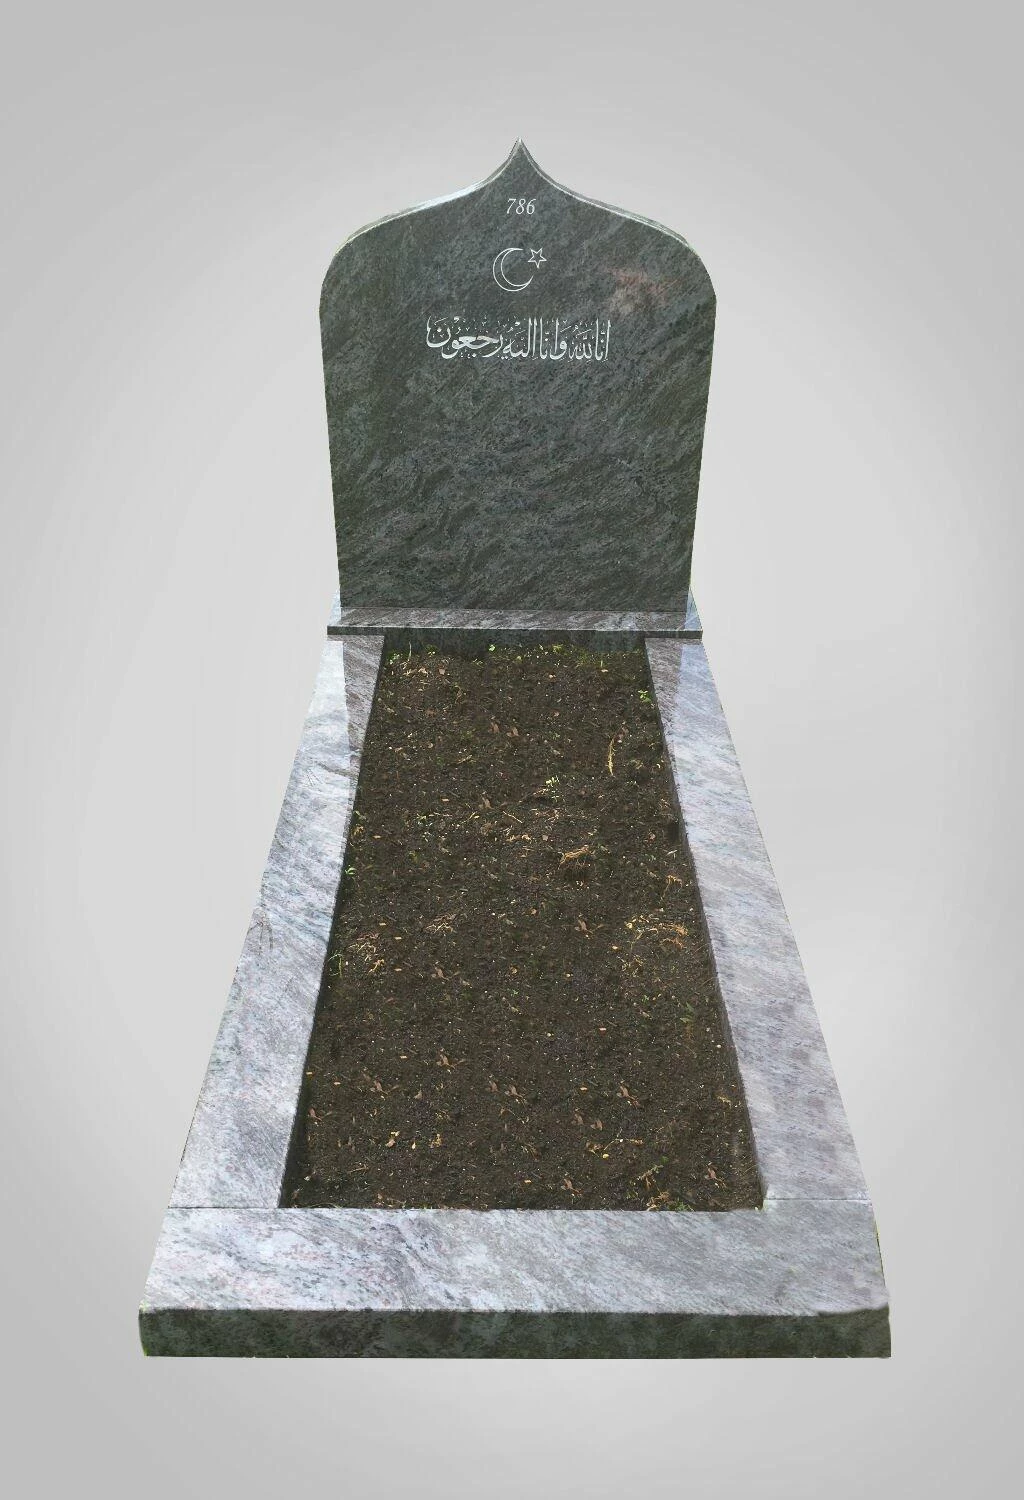 Islamitische grafstenen